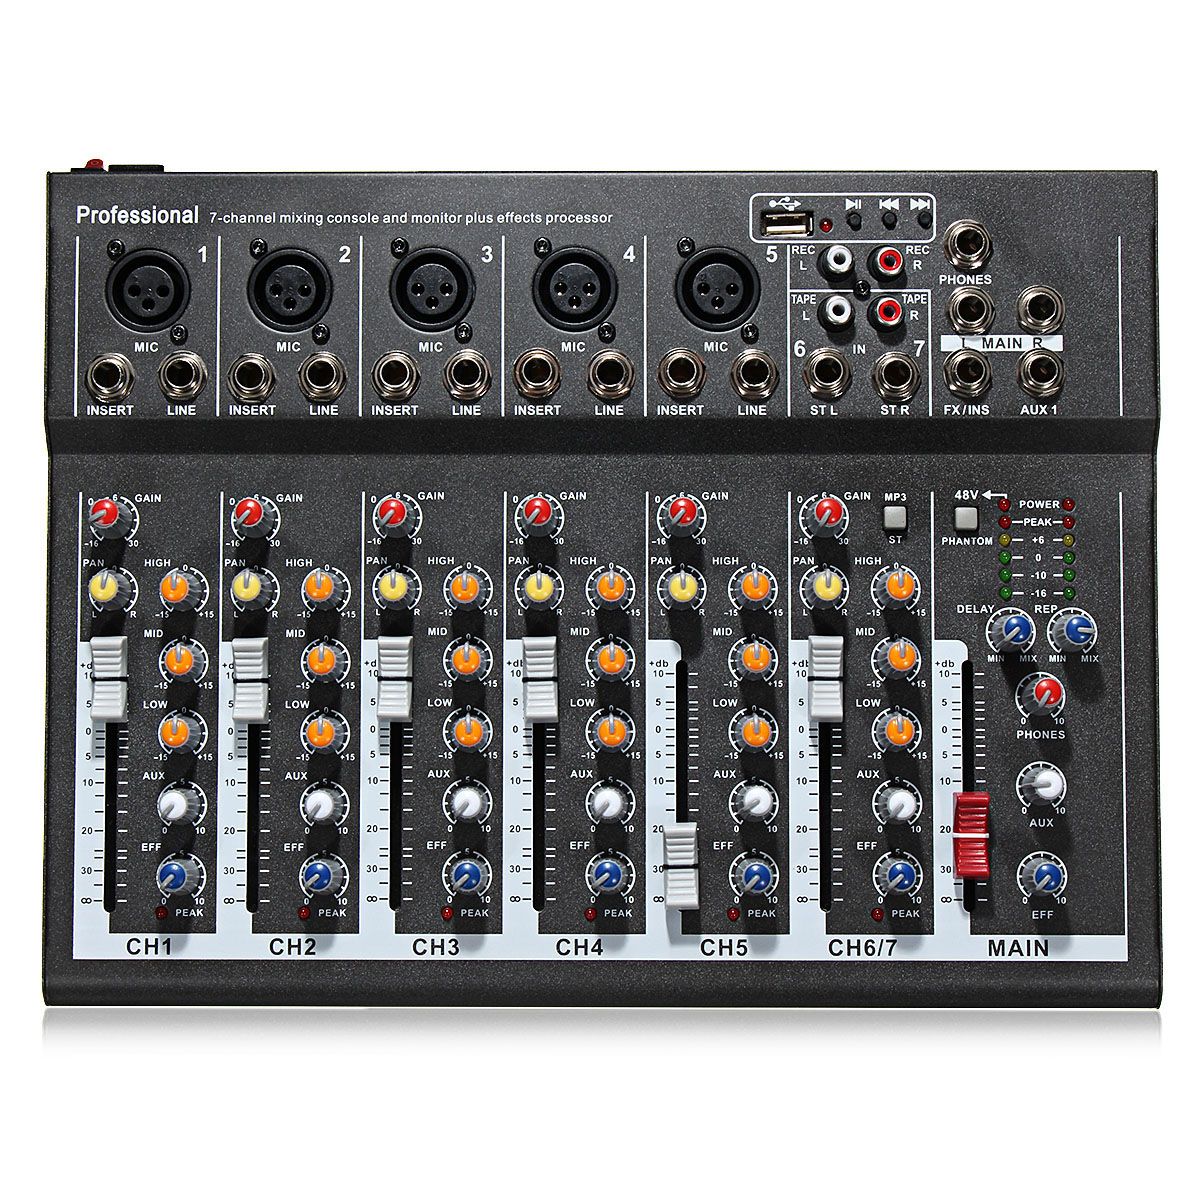 EL-MPortable-7-Channel-Professional-Live-Studio-Audio-Mixer-USB-Mixing-Console-KTV-DJ-Karaoke-1155689